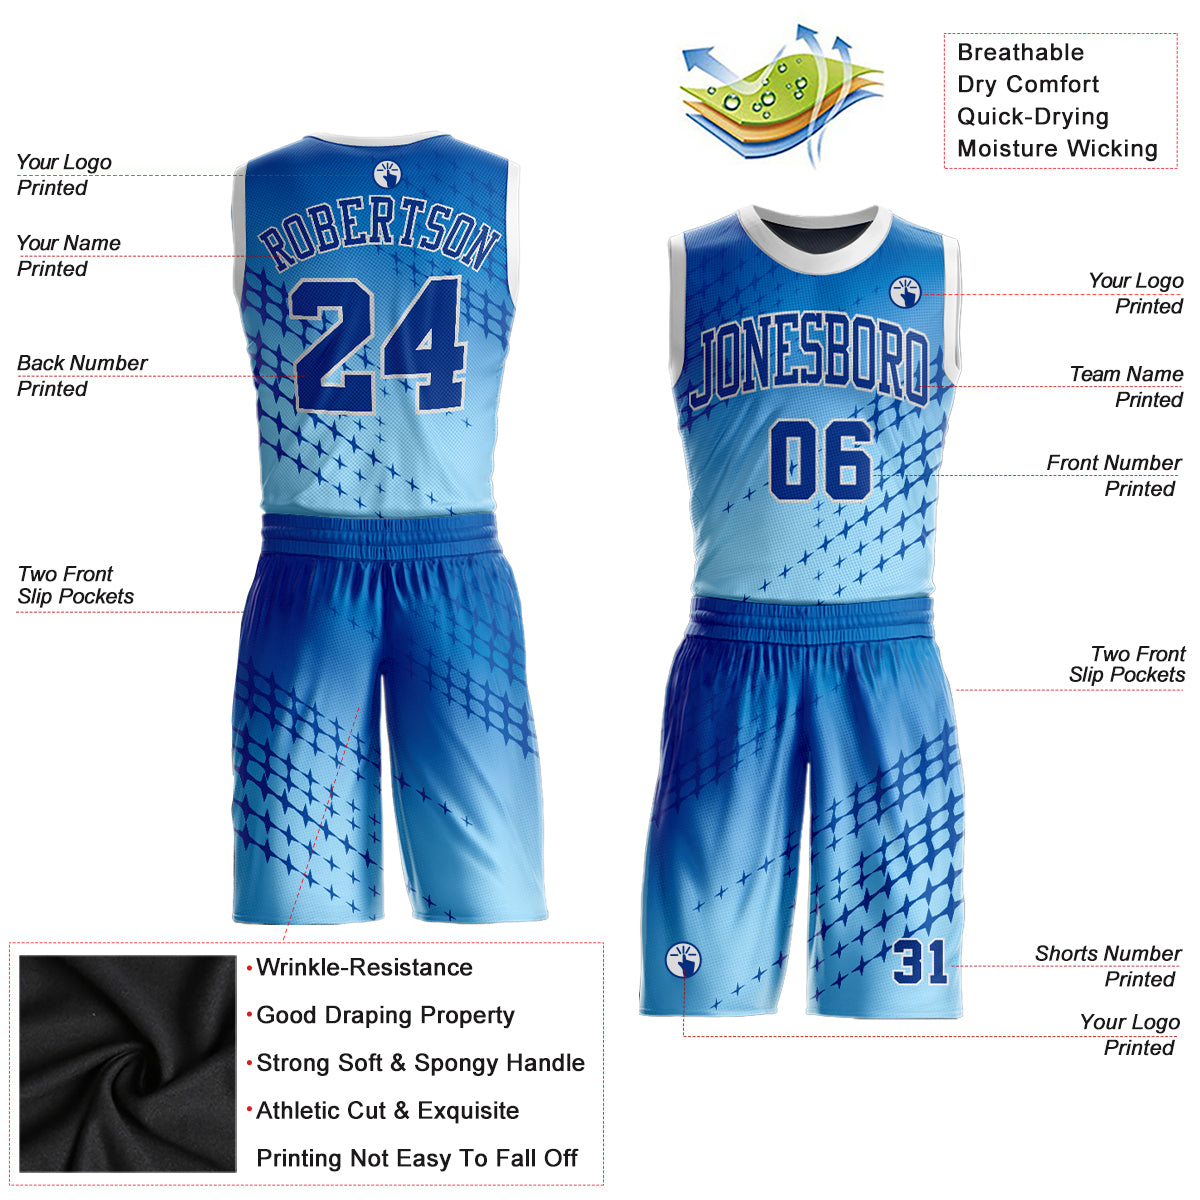 FANSIDEA Custom Basketball Jersey Black Royal-Light Blue Round Neck Sublimation Basketball Suit Jersey Men's Size:2XL